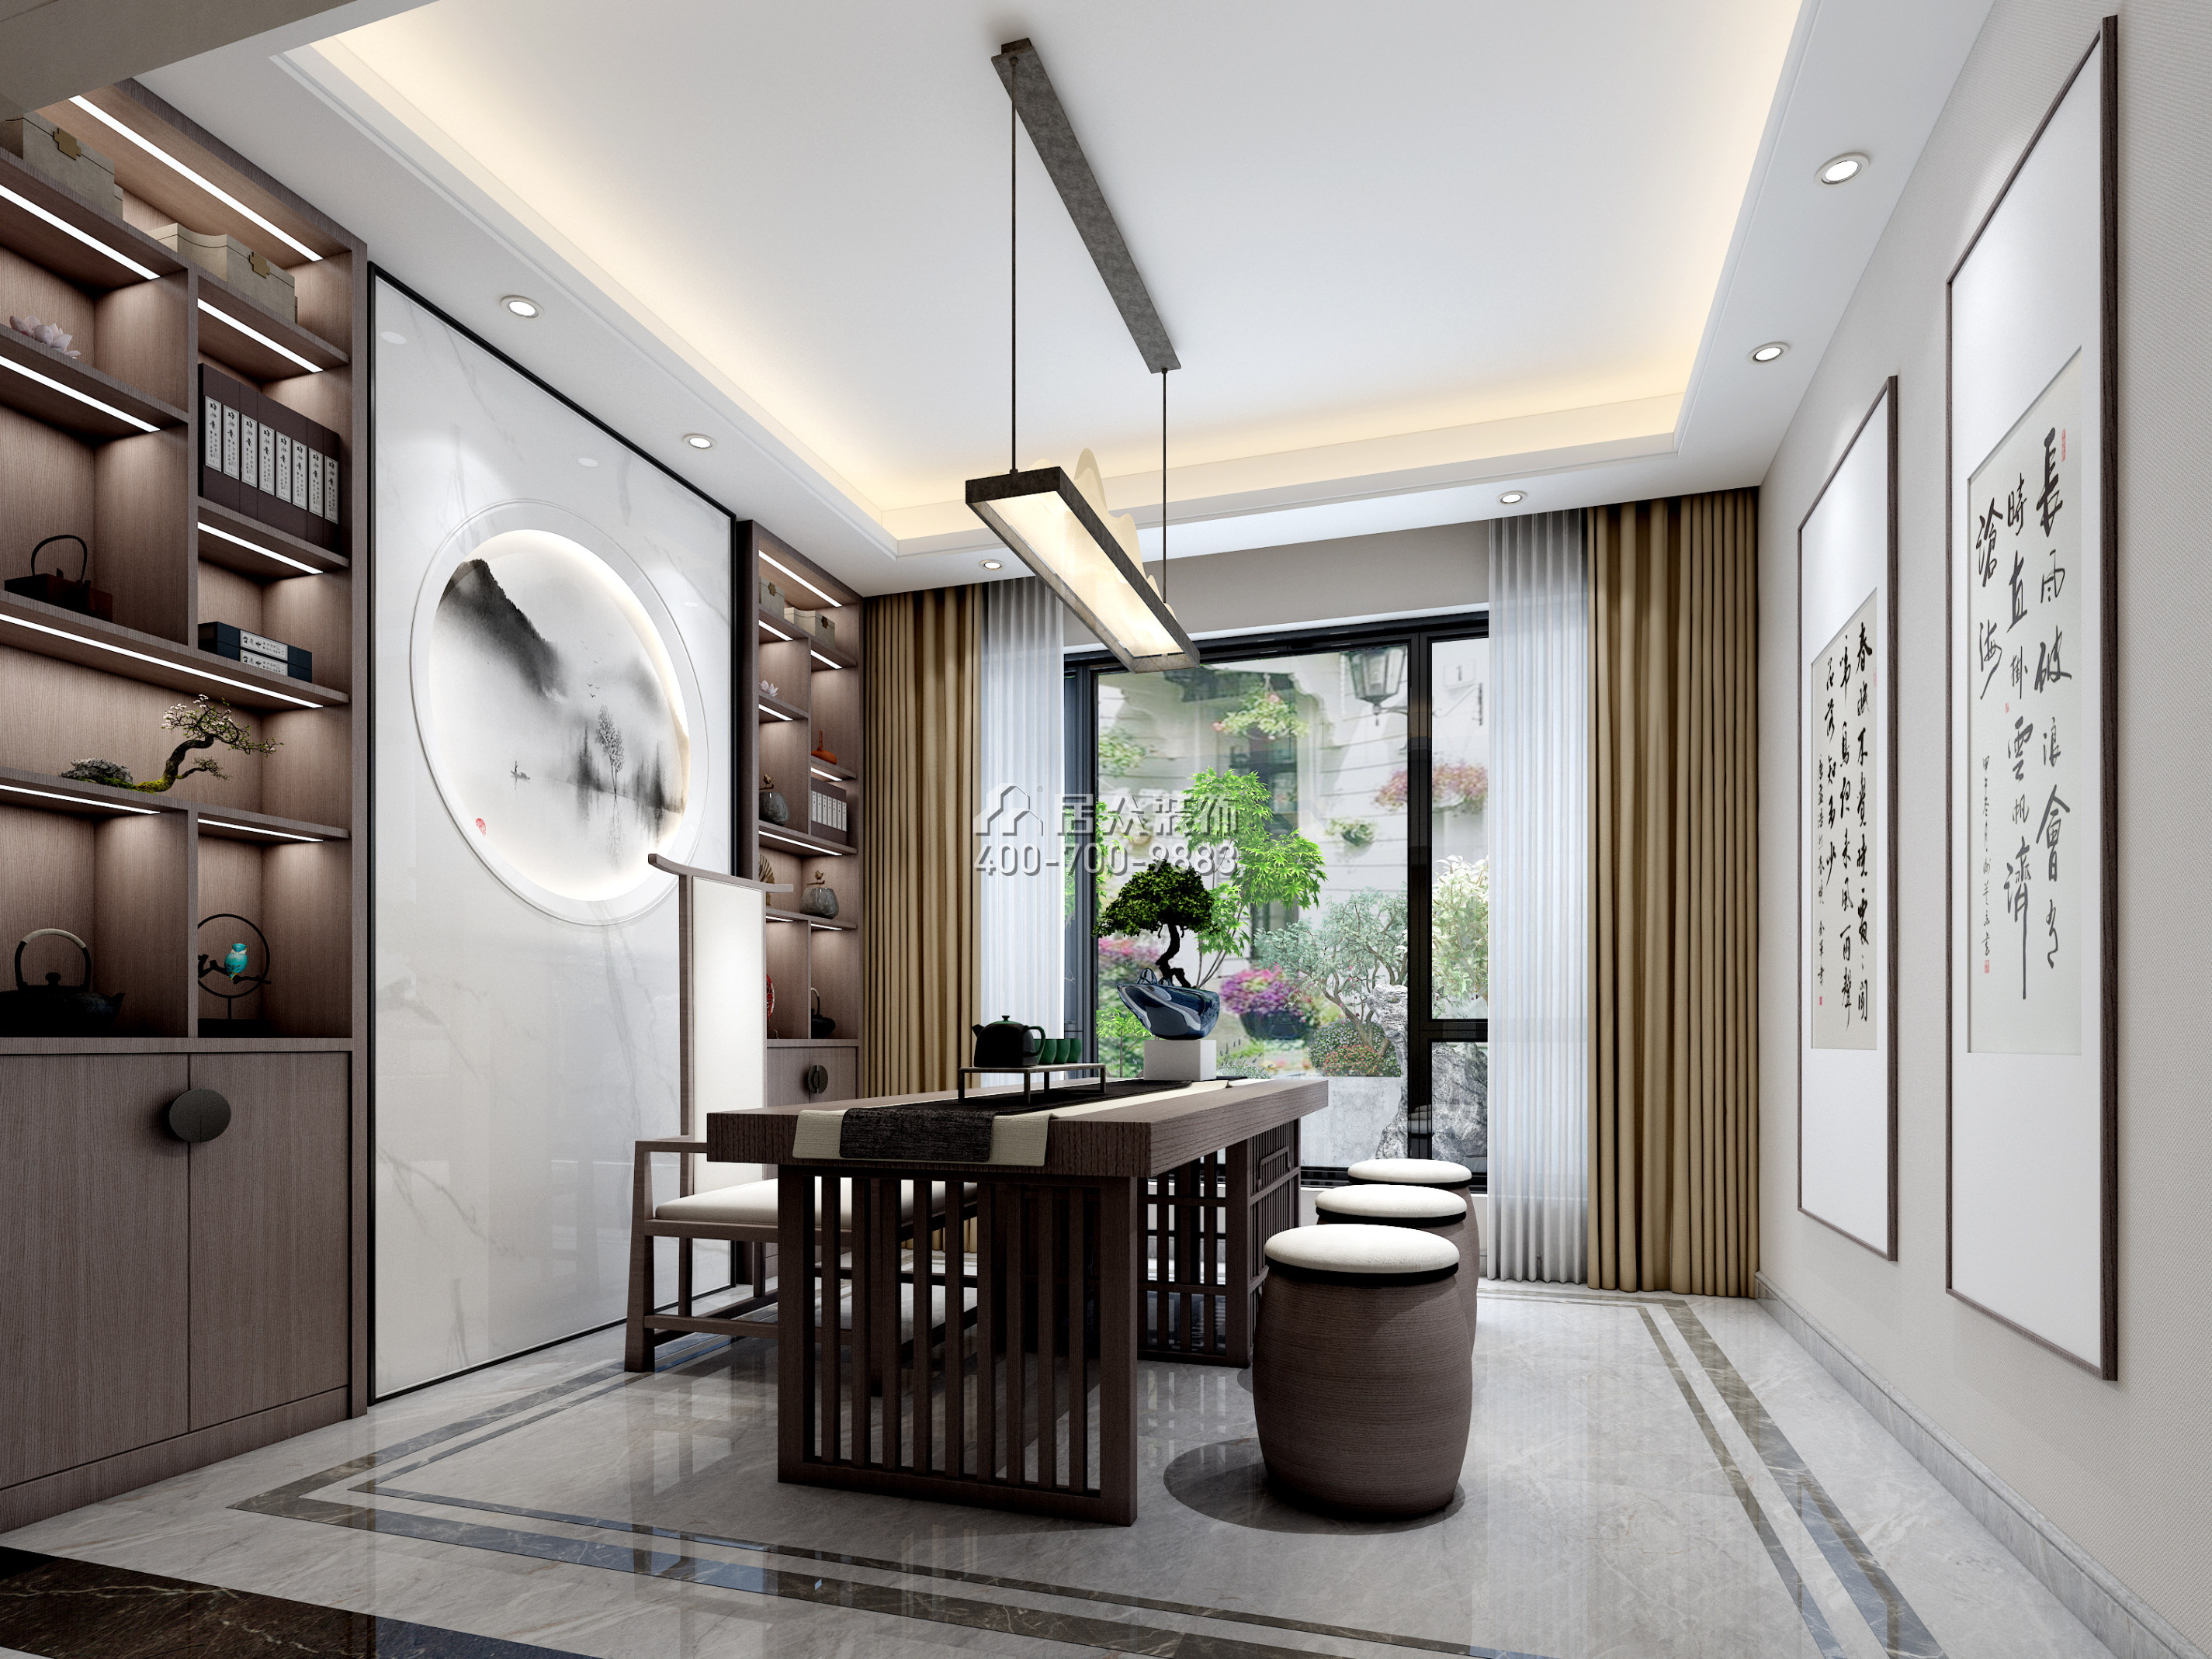 麗水佳園390平方米中式風格別墅戶型茶室裝修效果圖